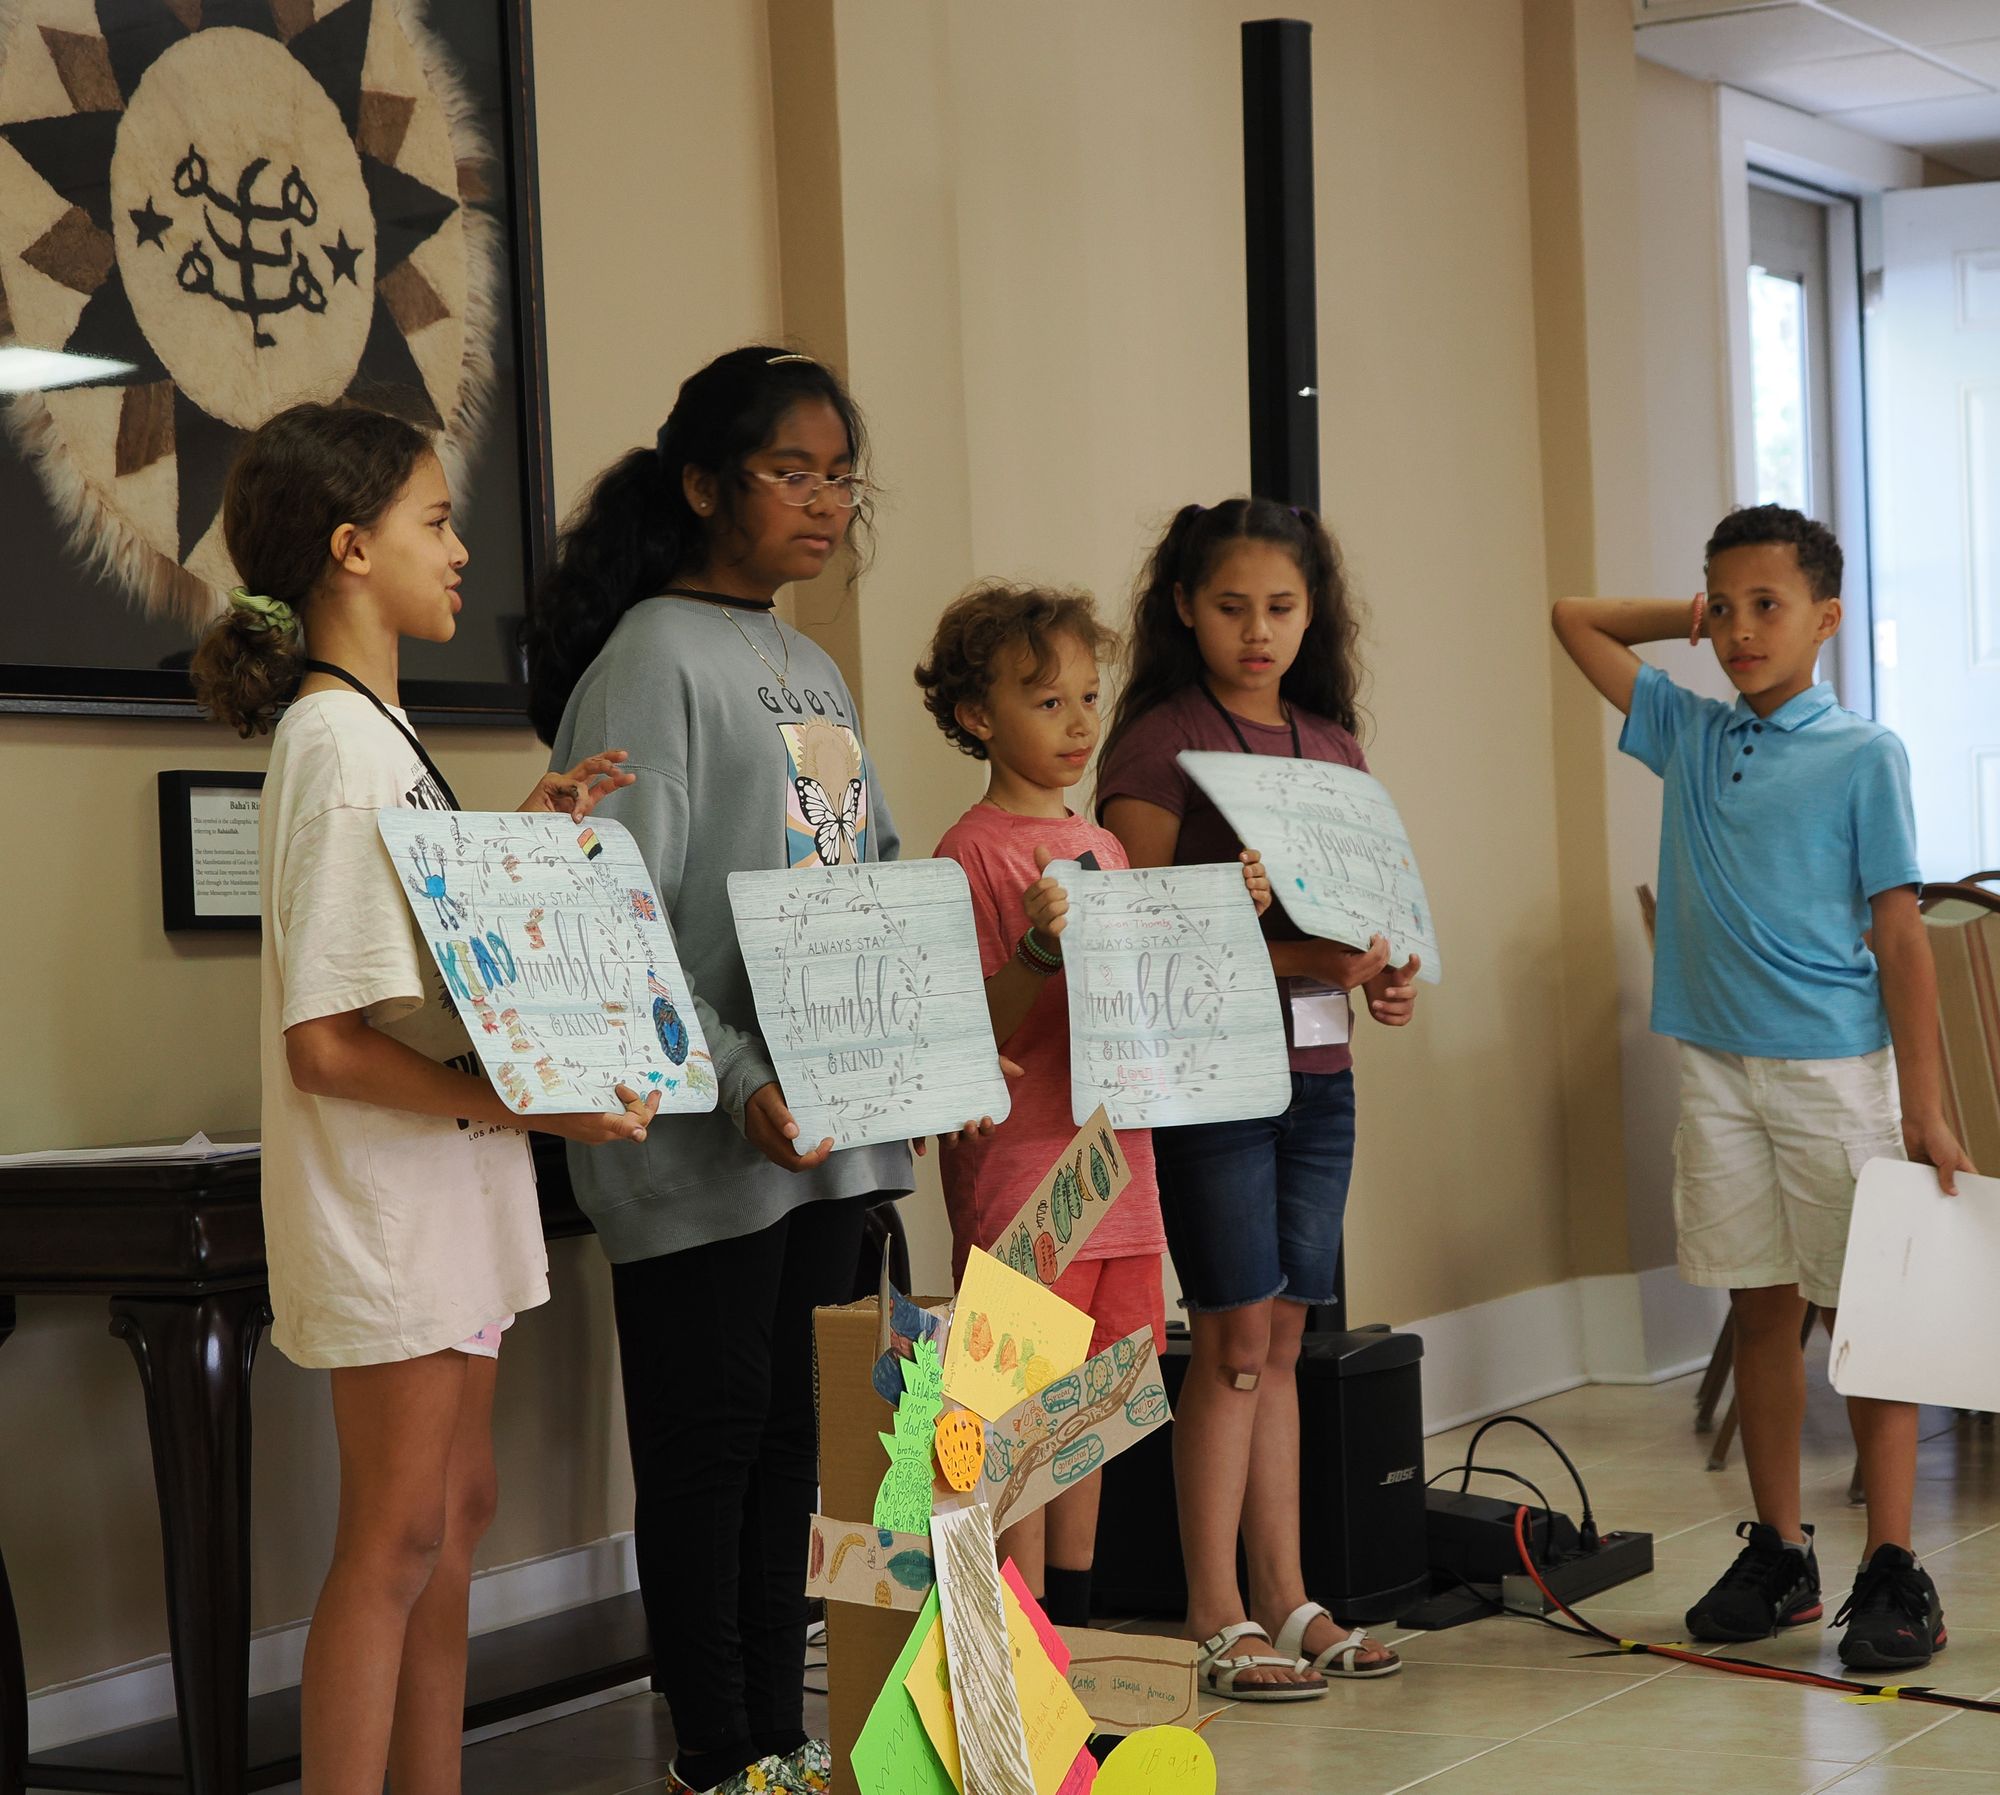 Children present their artwork from their class, Savannah GA